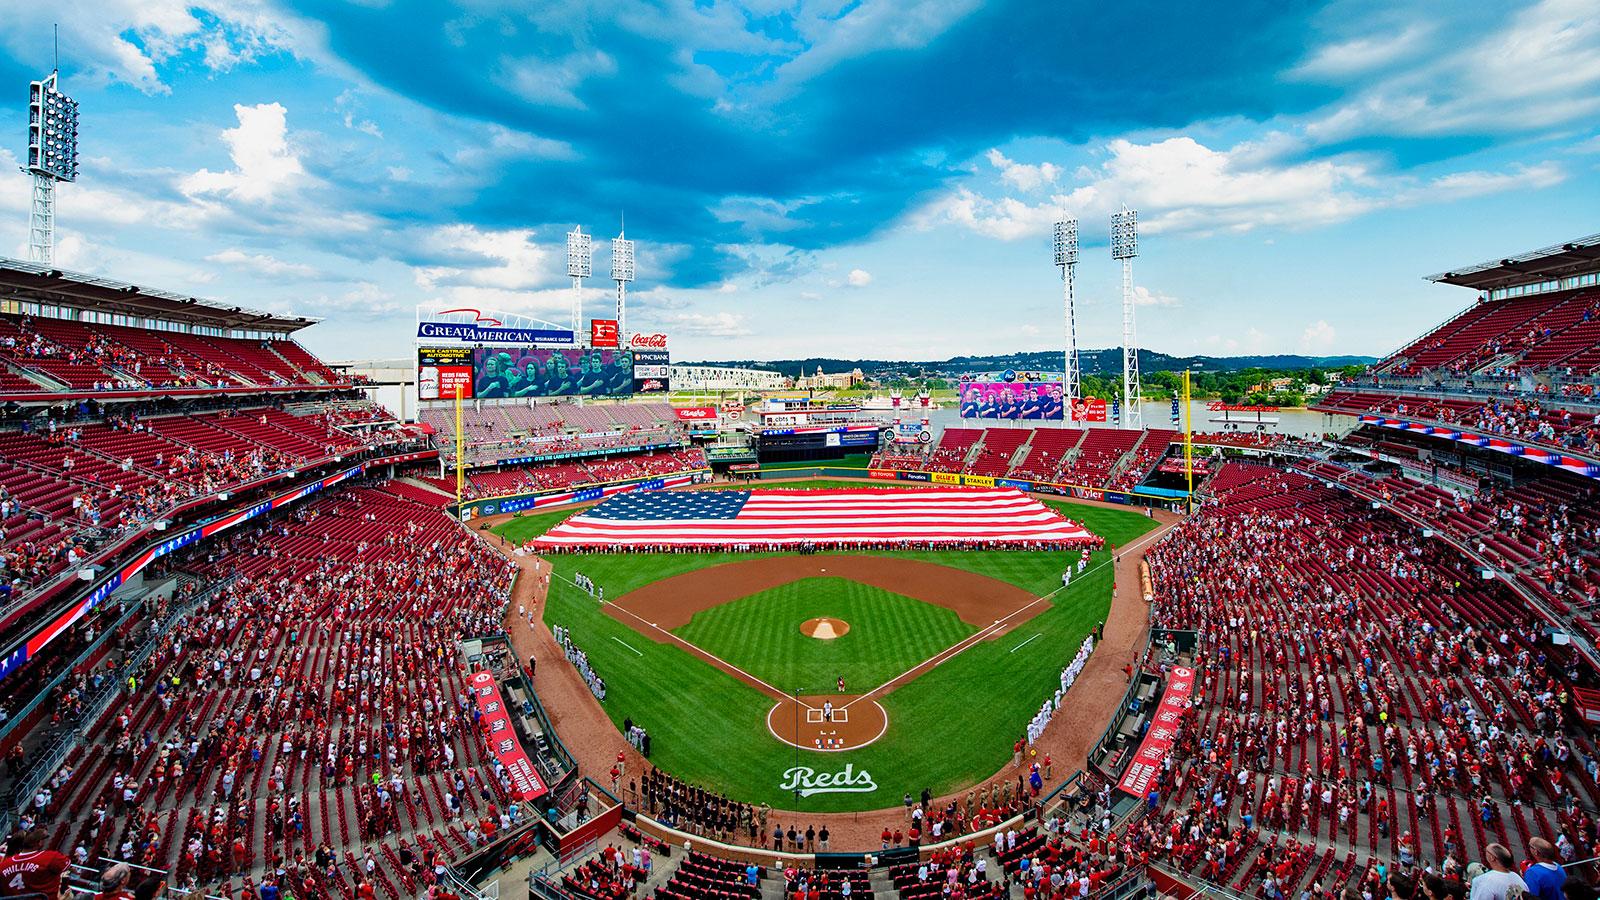 Cincinnati Reds on X: America the beautiful. #RedsCountry https